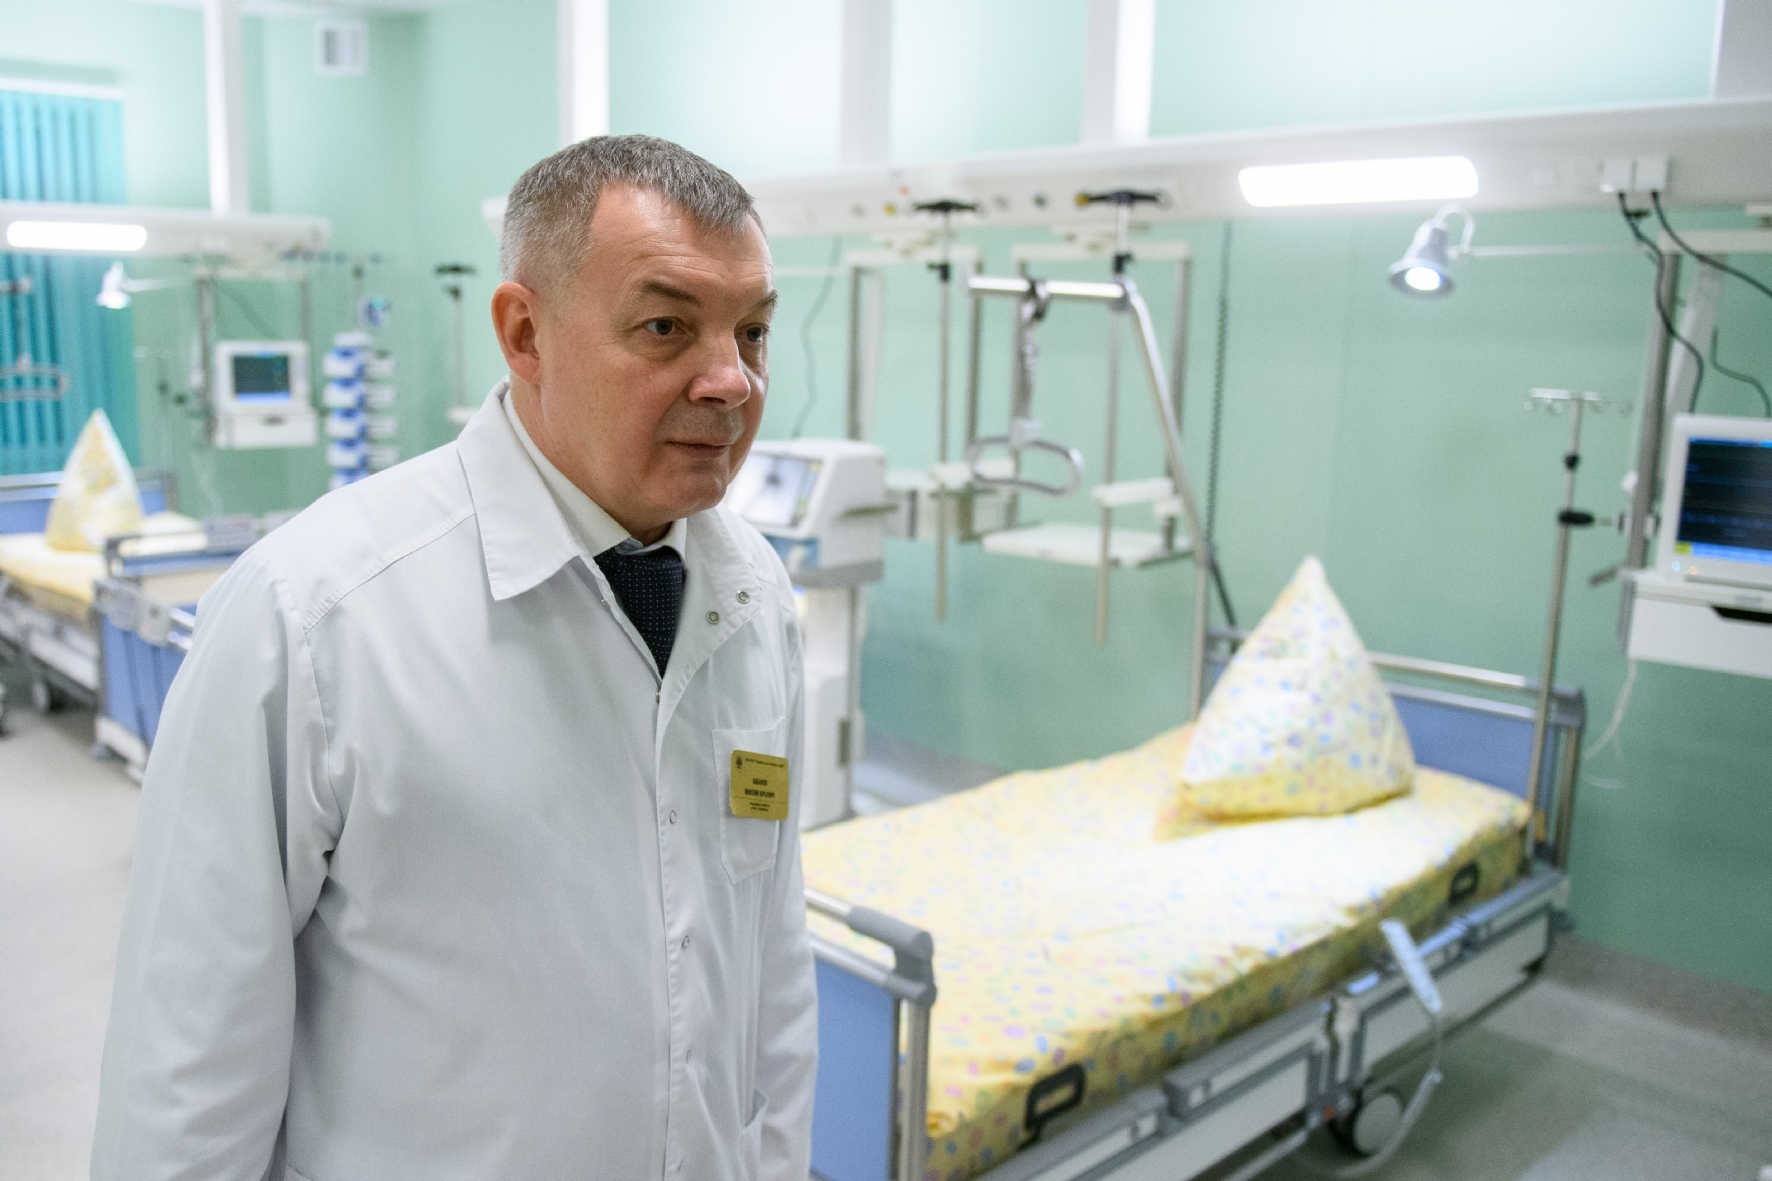 Главный врач Госпиталя для ветеранов войн Максим Кабанов